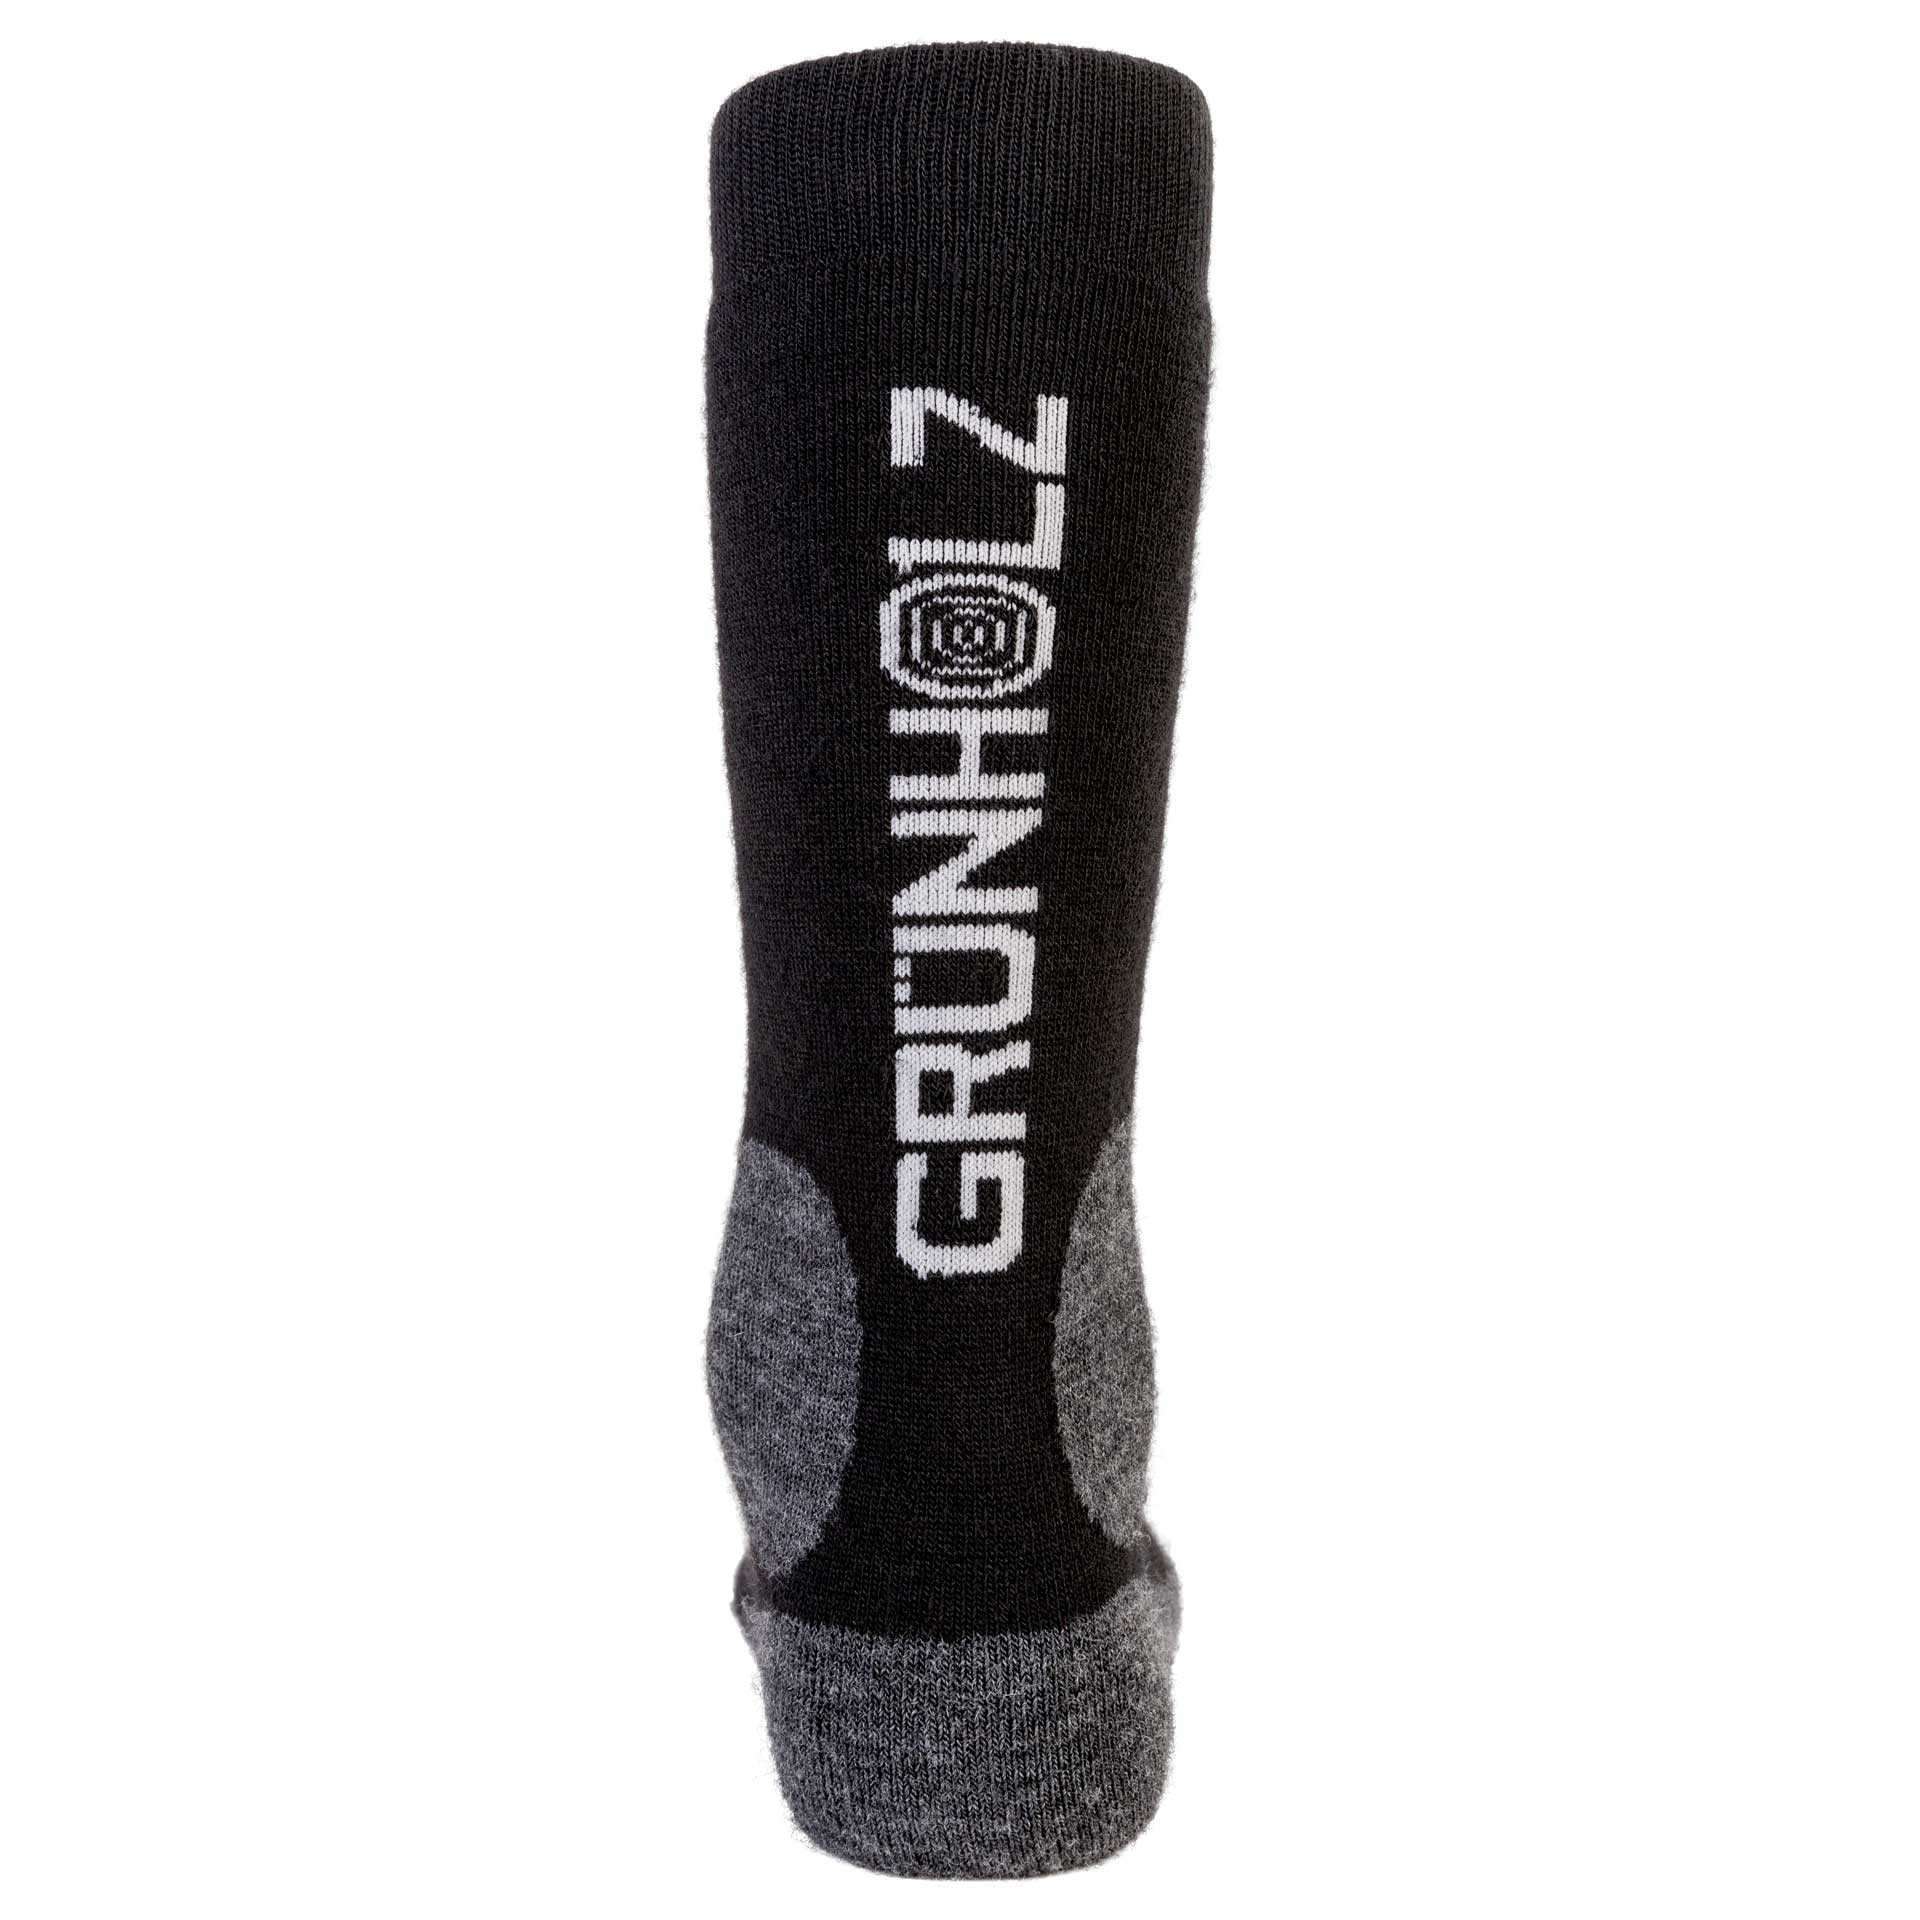  GRÜNHOLZ® Strong Socken